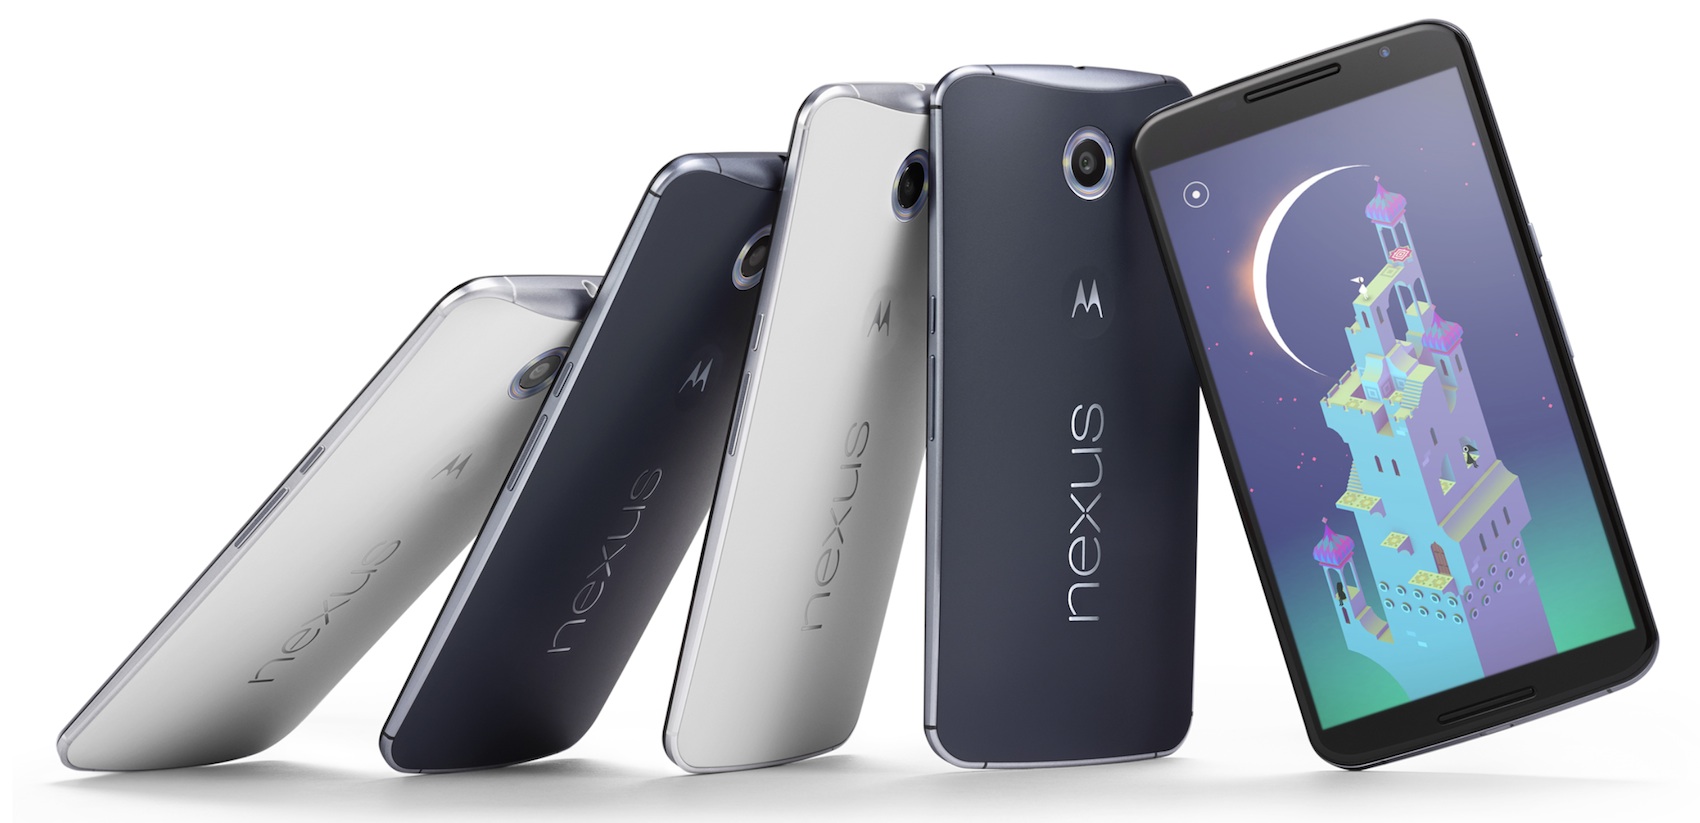 Google announces Nexus 6, Nexus 9, Nexus Player, and Android 5.0